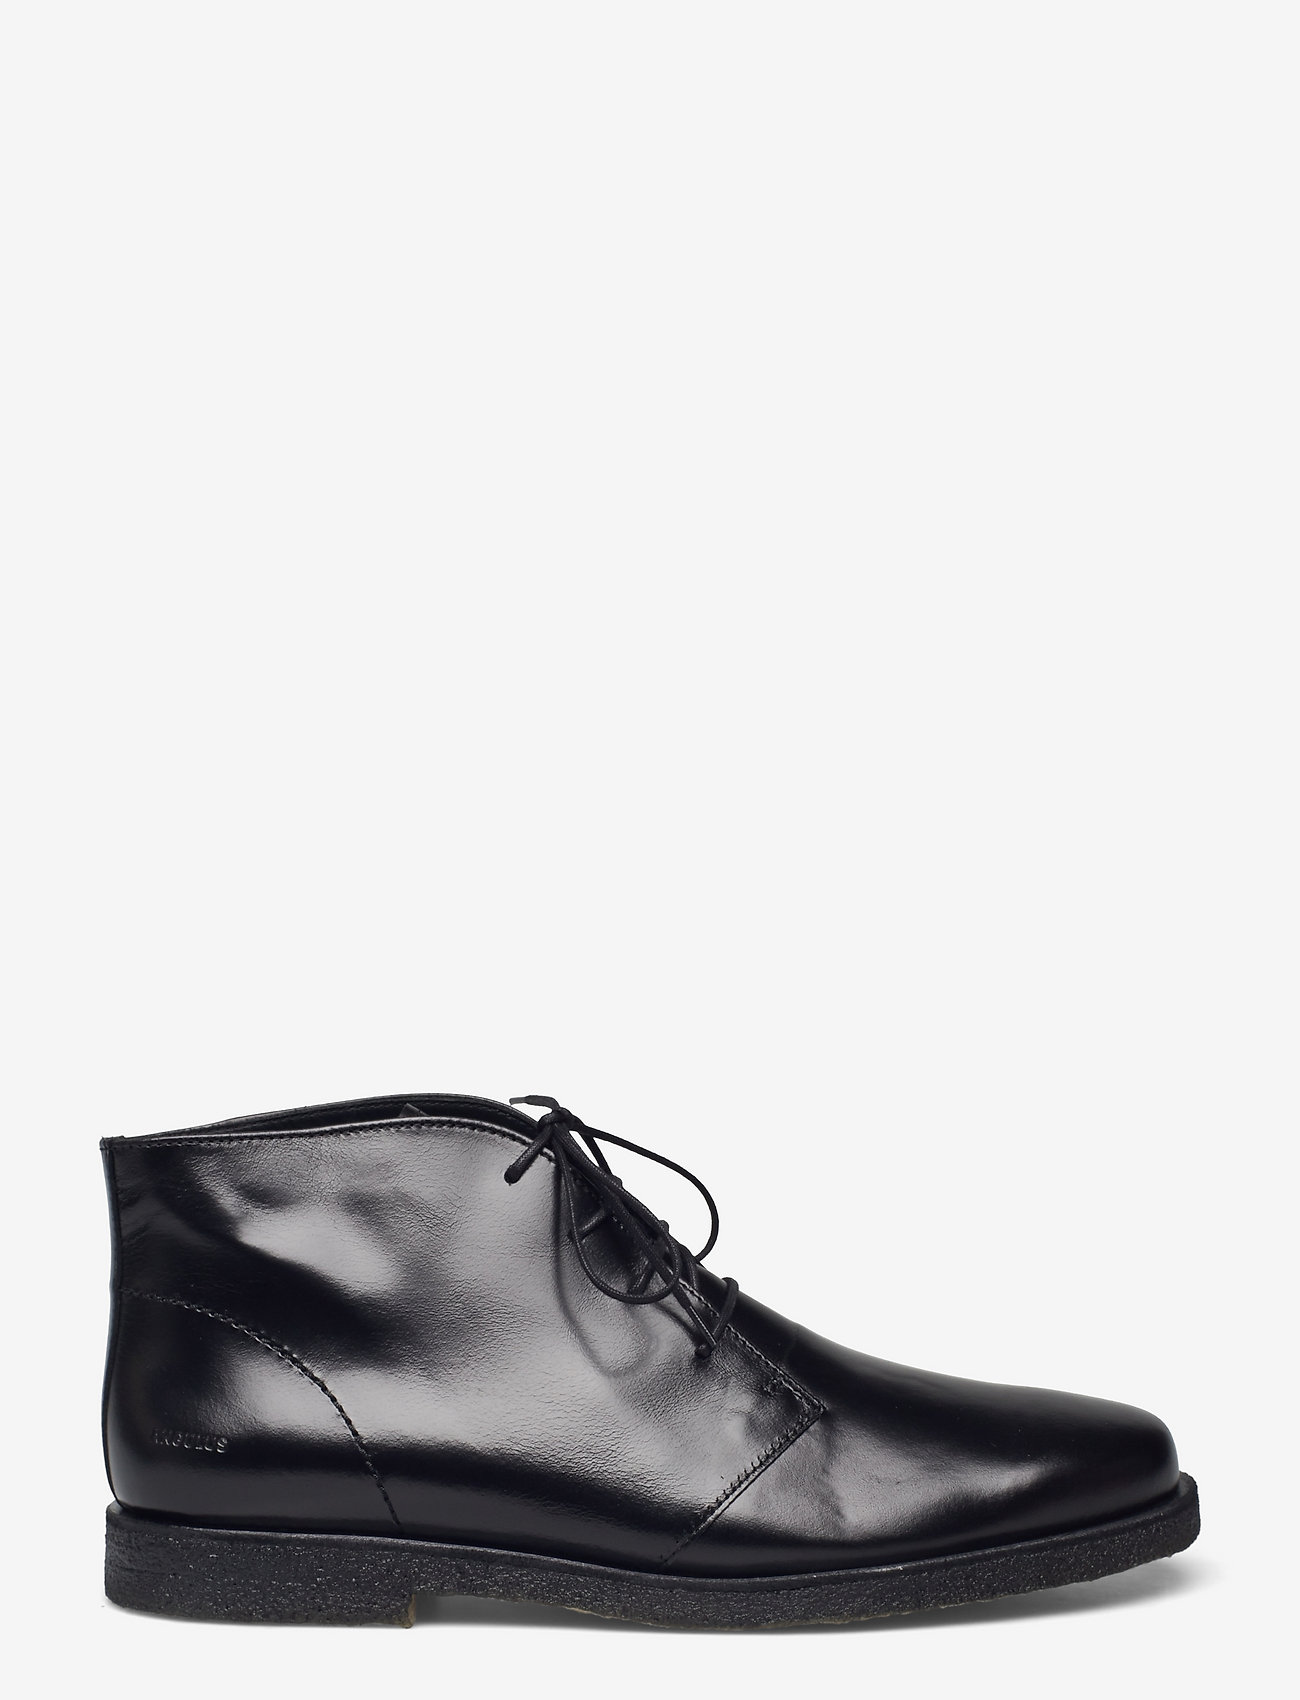 ANGULUS - Shoes - flat - desert boots - 1835 black - 1